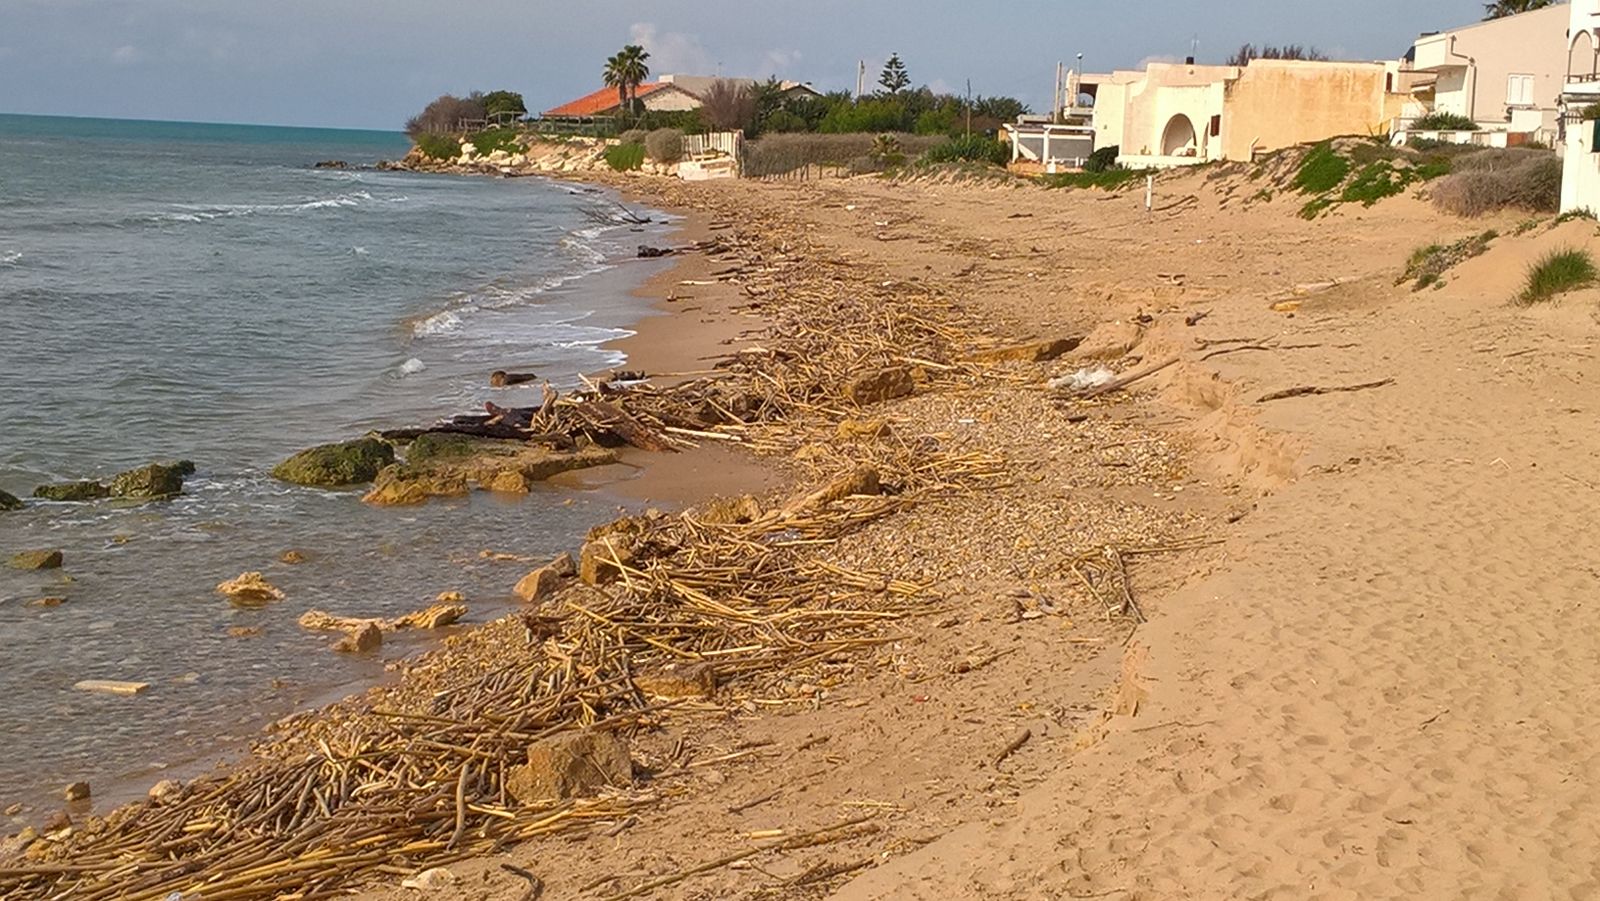  Punta Secca, la spiaggia del Palmento è ridotta così: la riva piena di detriti